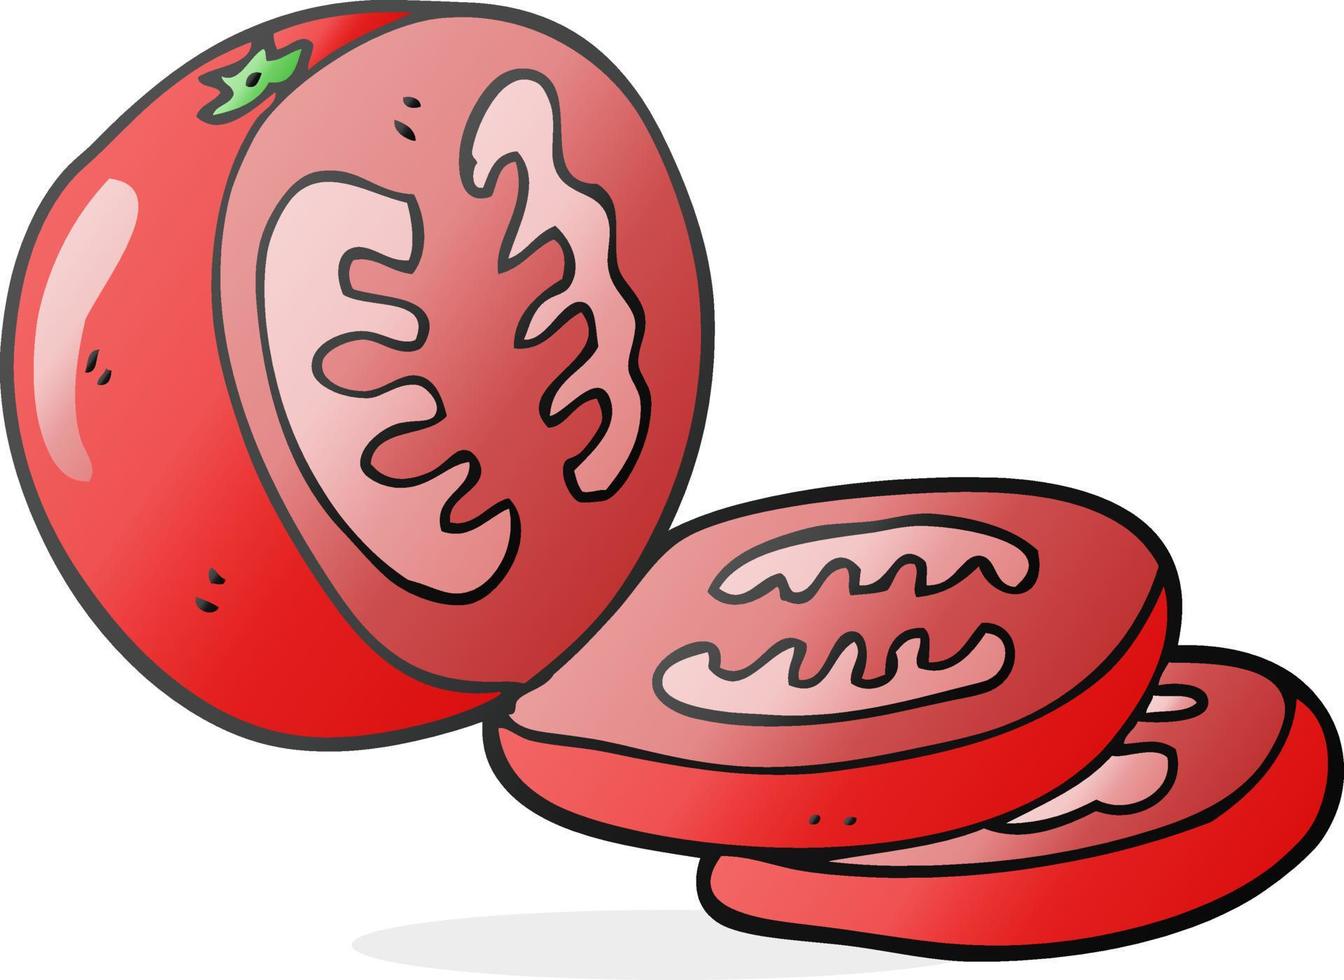 Freihand gezeichnete Cartoon-Tomatenscheiben vektor